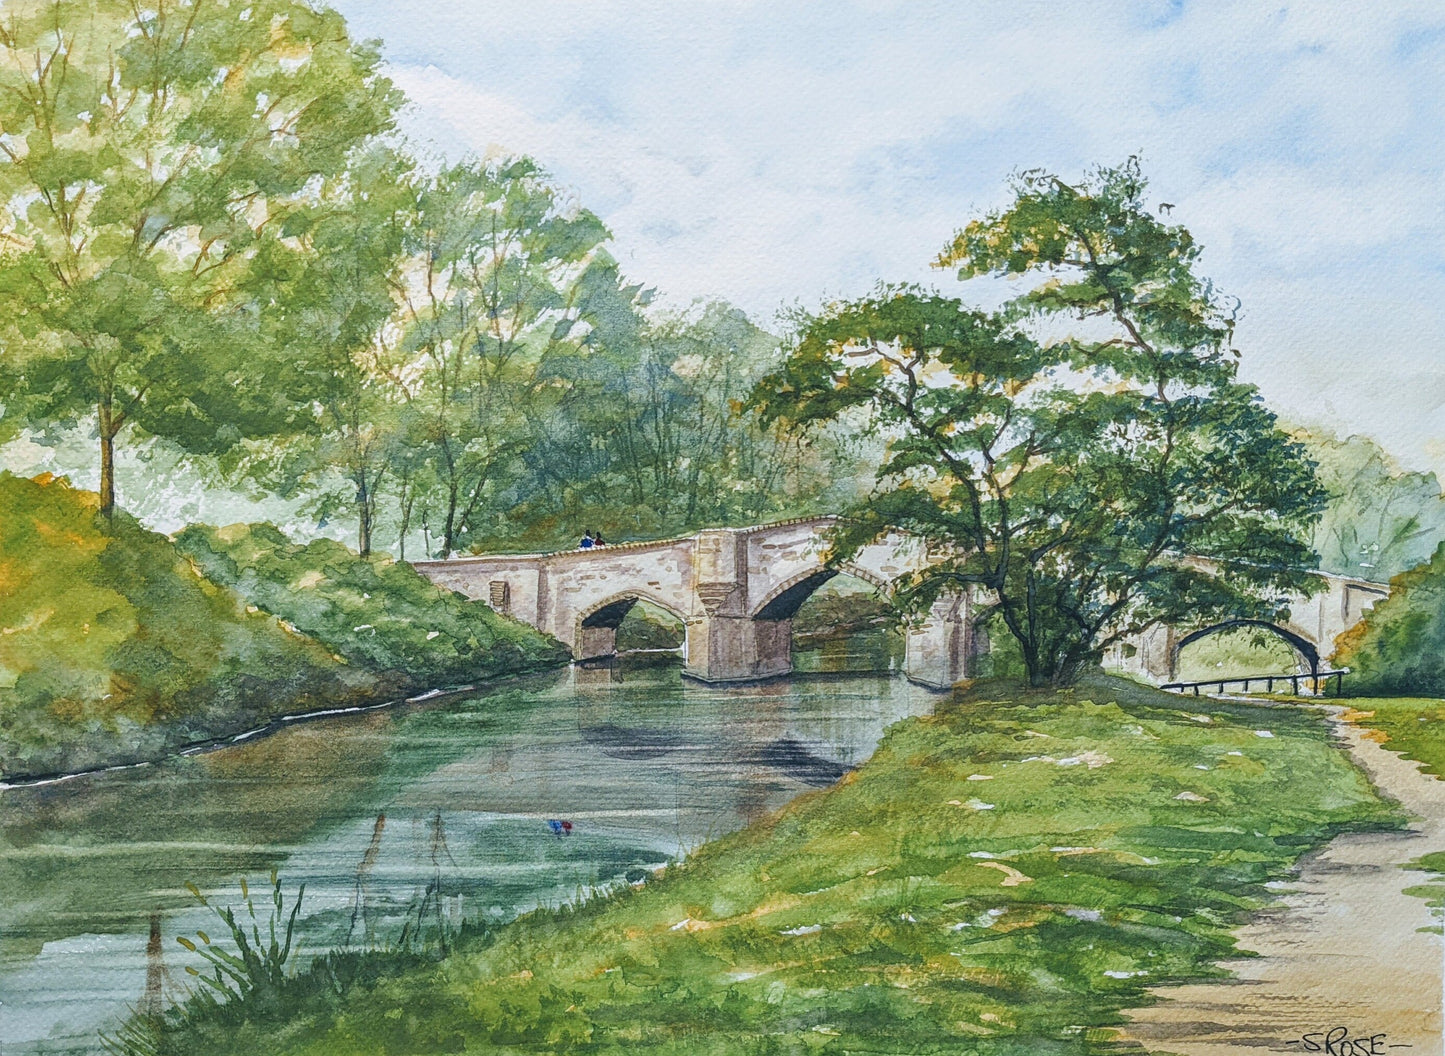 Teston Bridge, UK (watercolor painting)